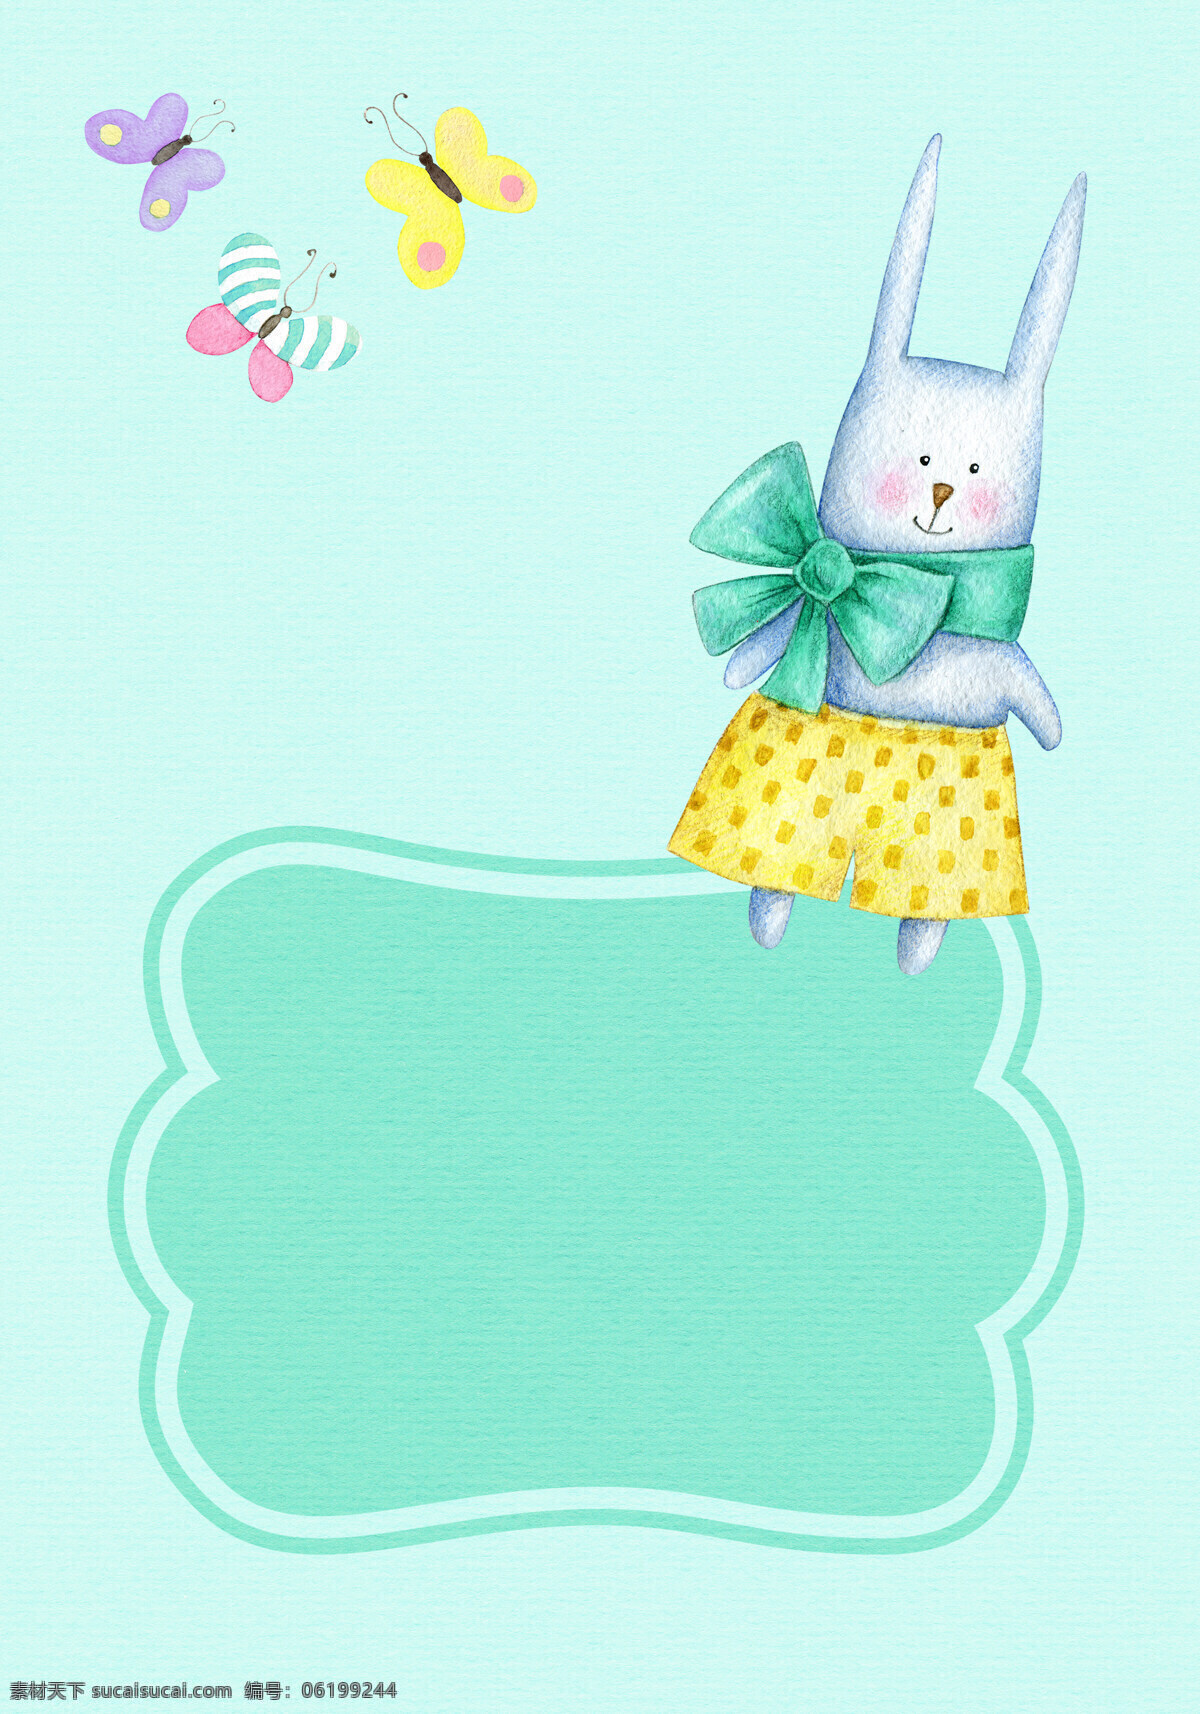 可爱 兔子 精美 蝴蝶 卡片 背景 背景素材 设计素材